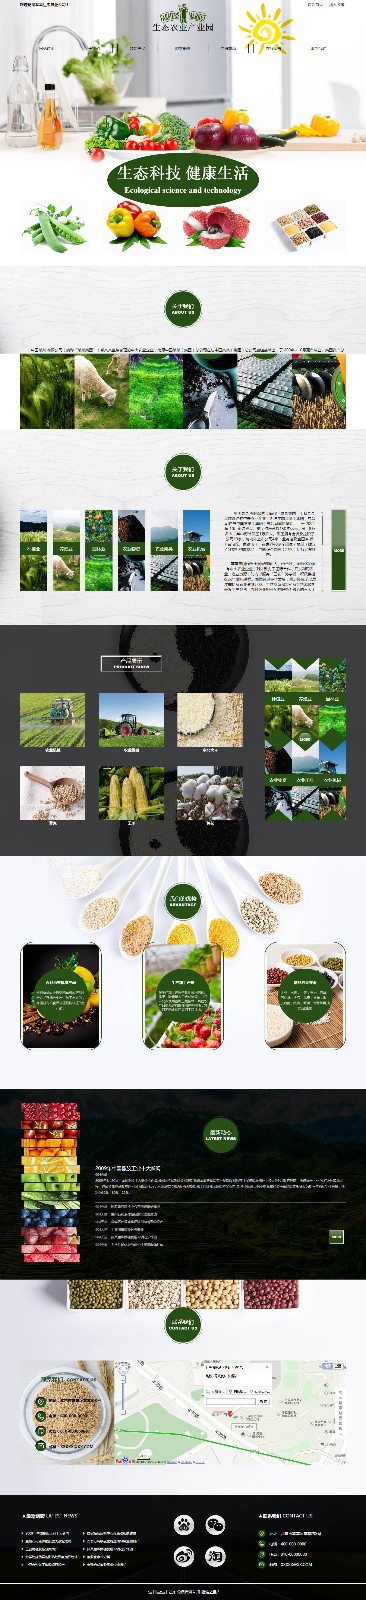 企业网站精美模板-agriculture-1144968